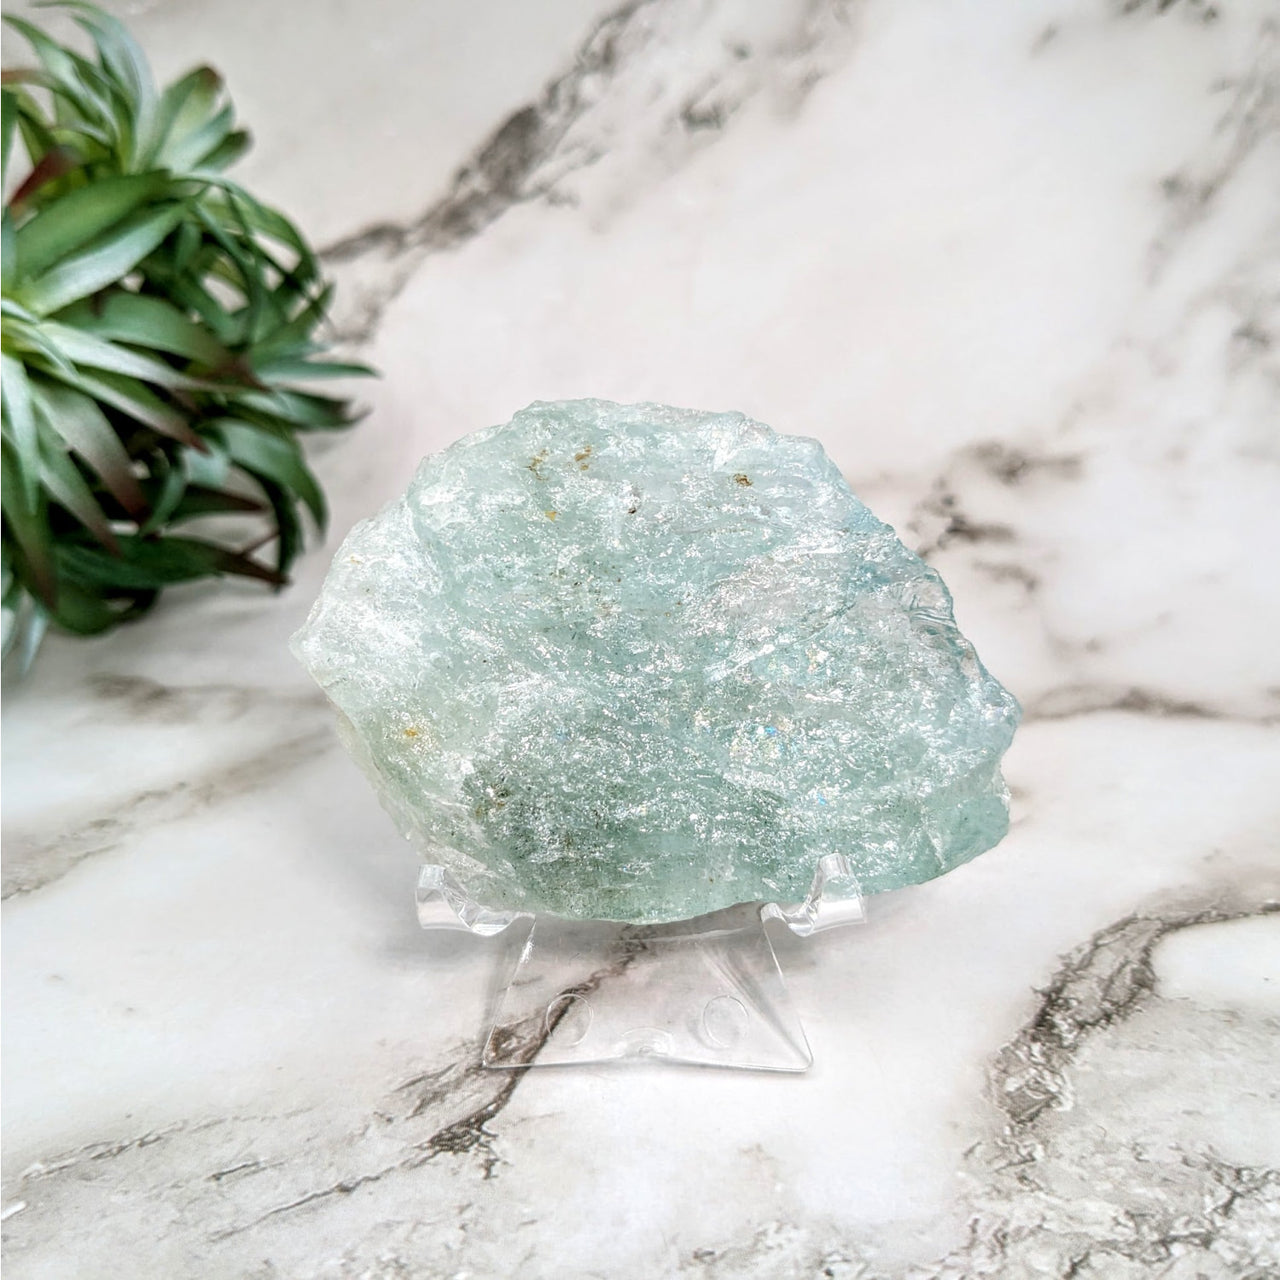 Green quartz stone on marble table - Aquamarine 2.8’ Rough Specimen #LV4626